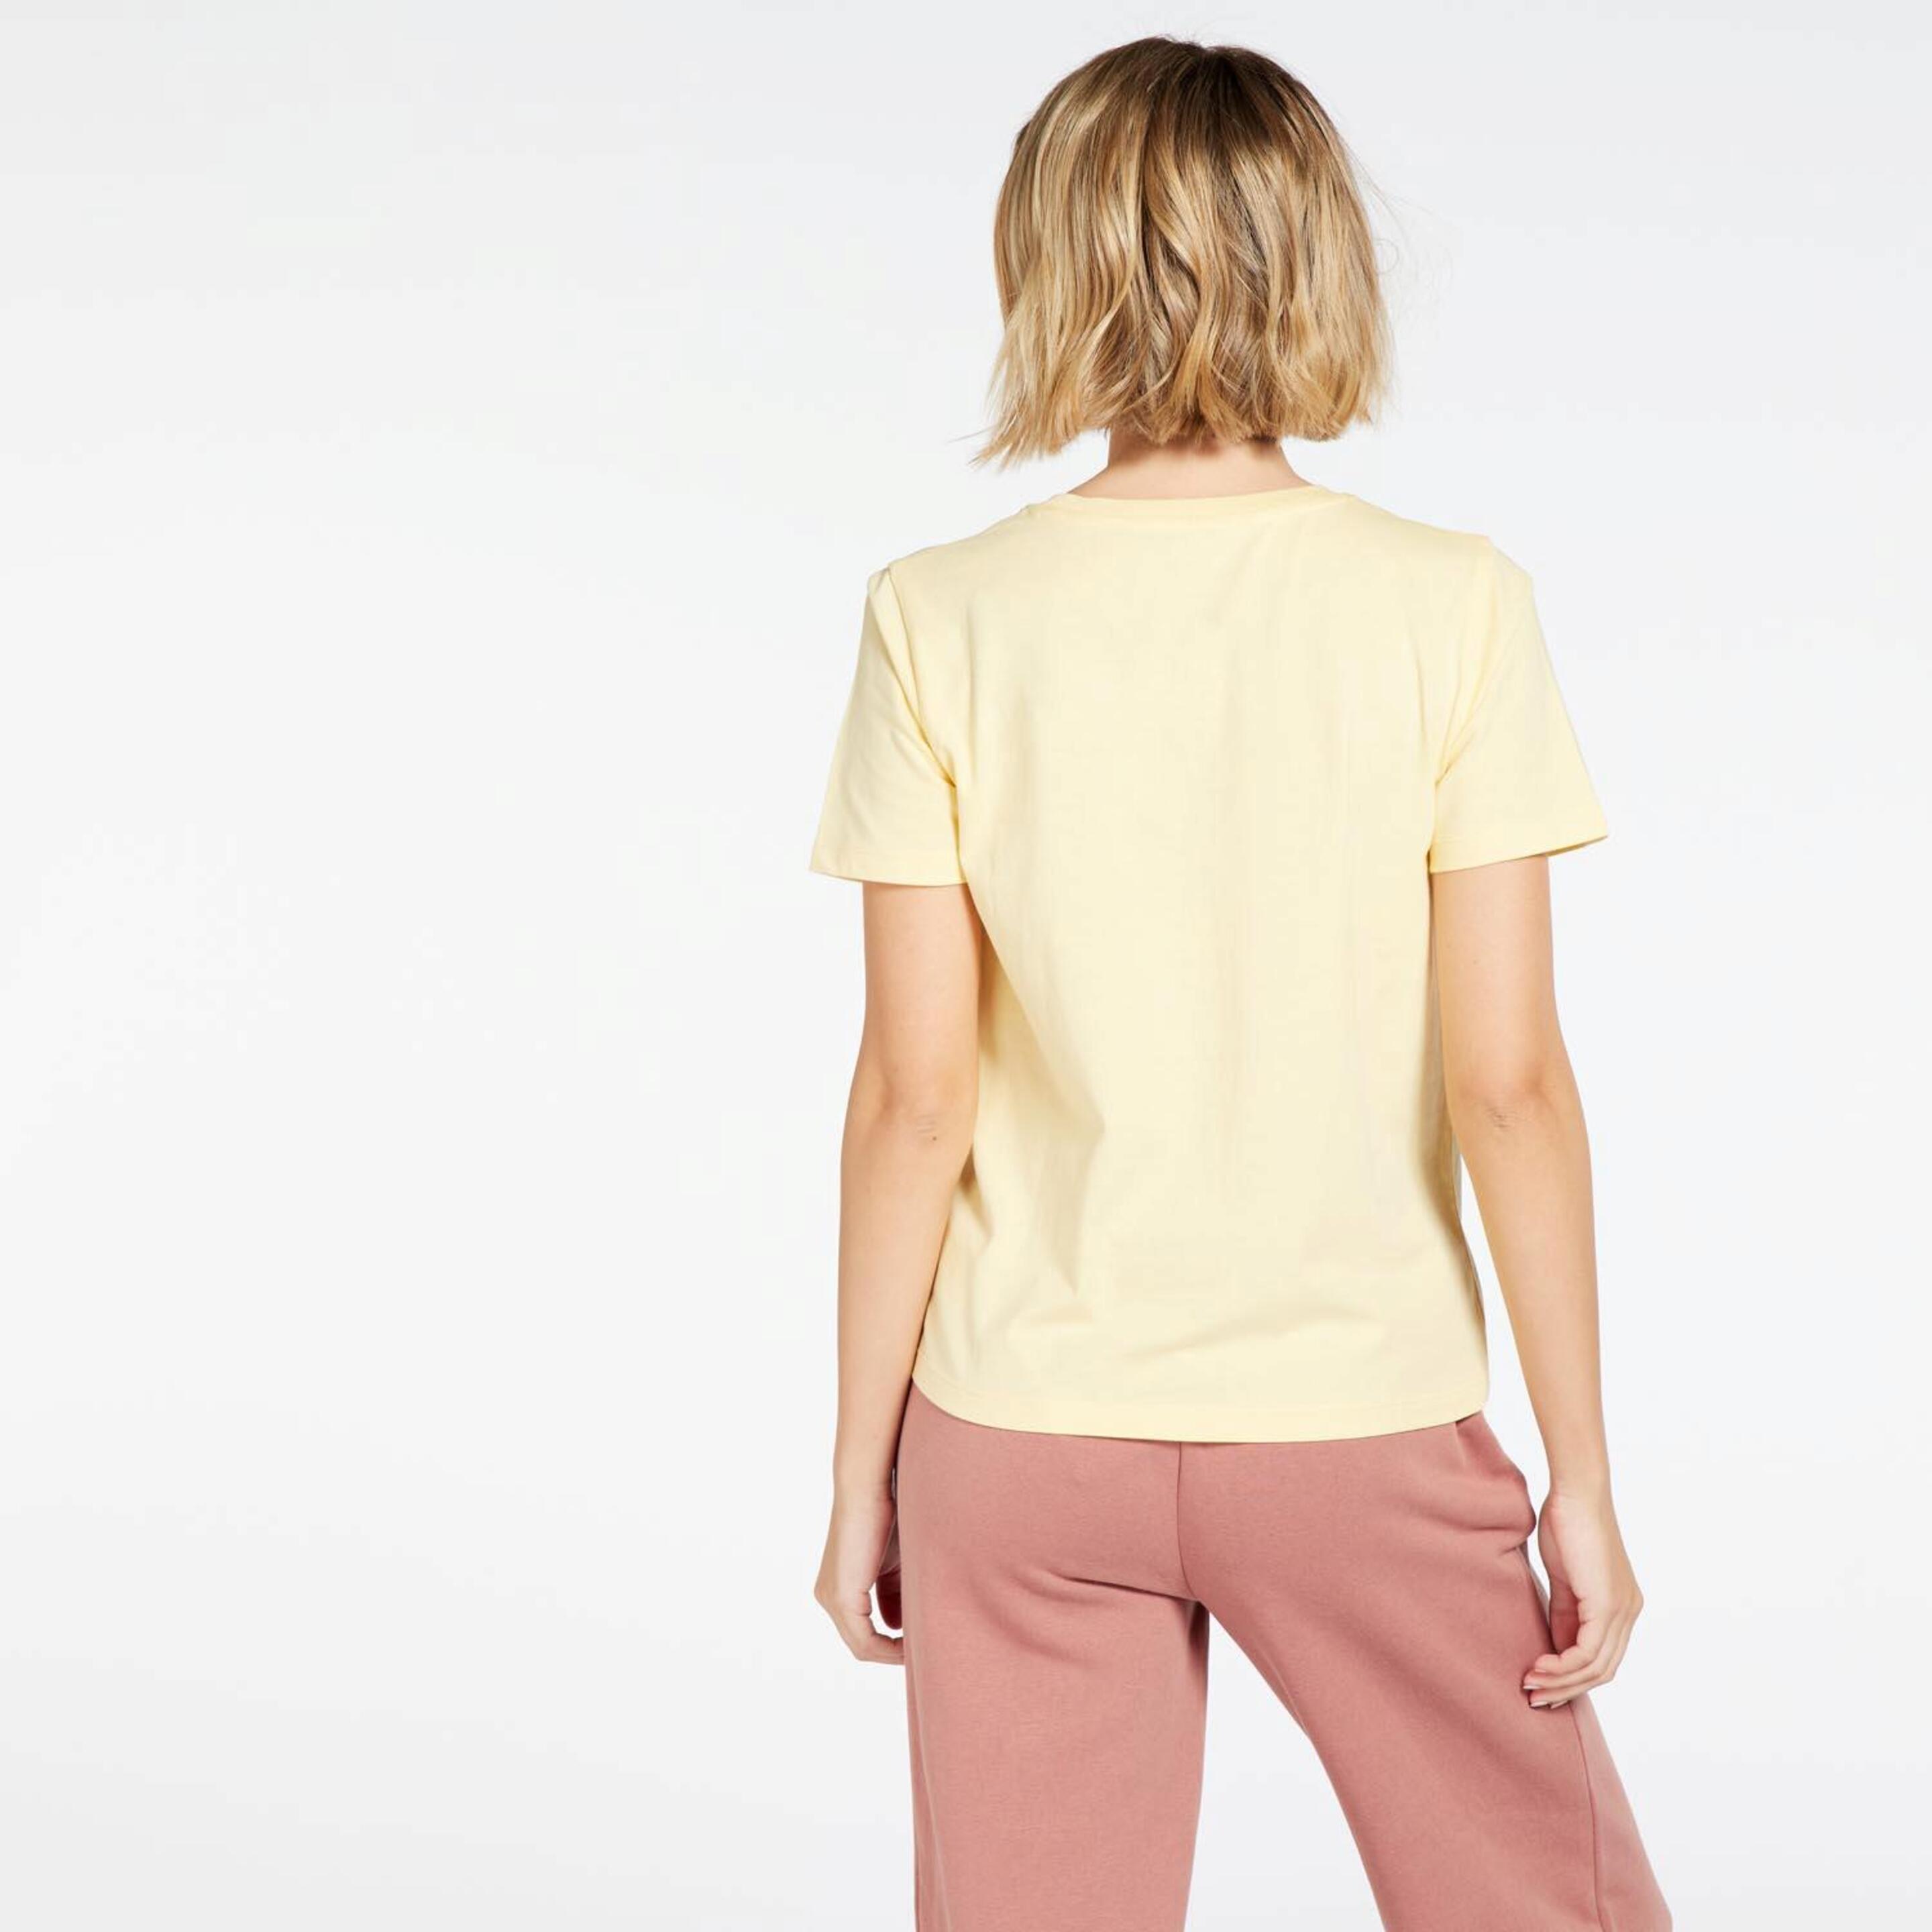 Up Basic - Amarillo - Camiseta Mujer